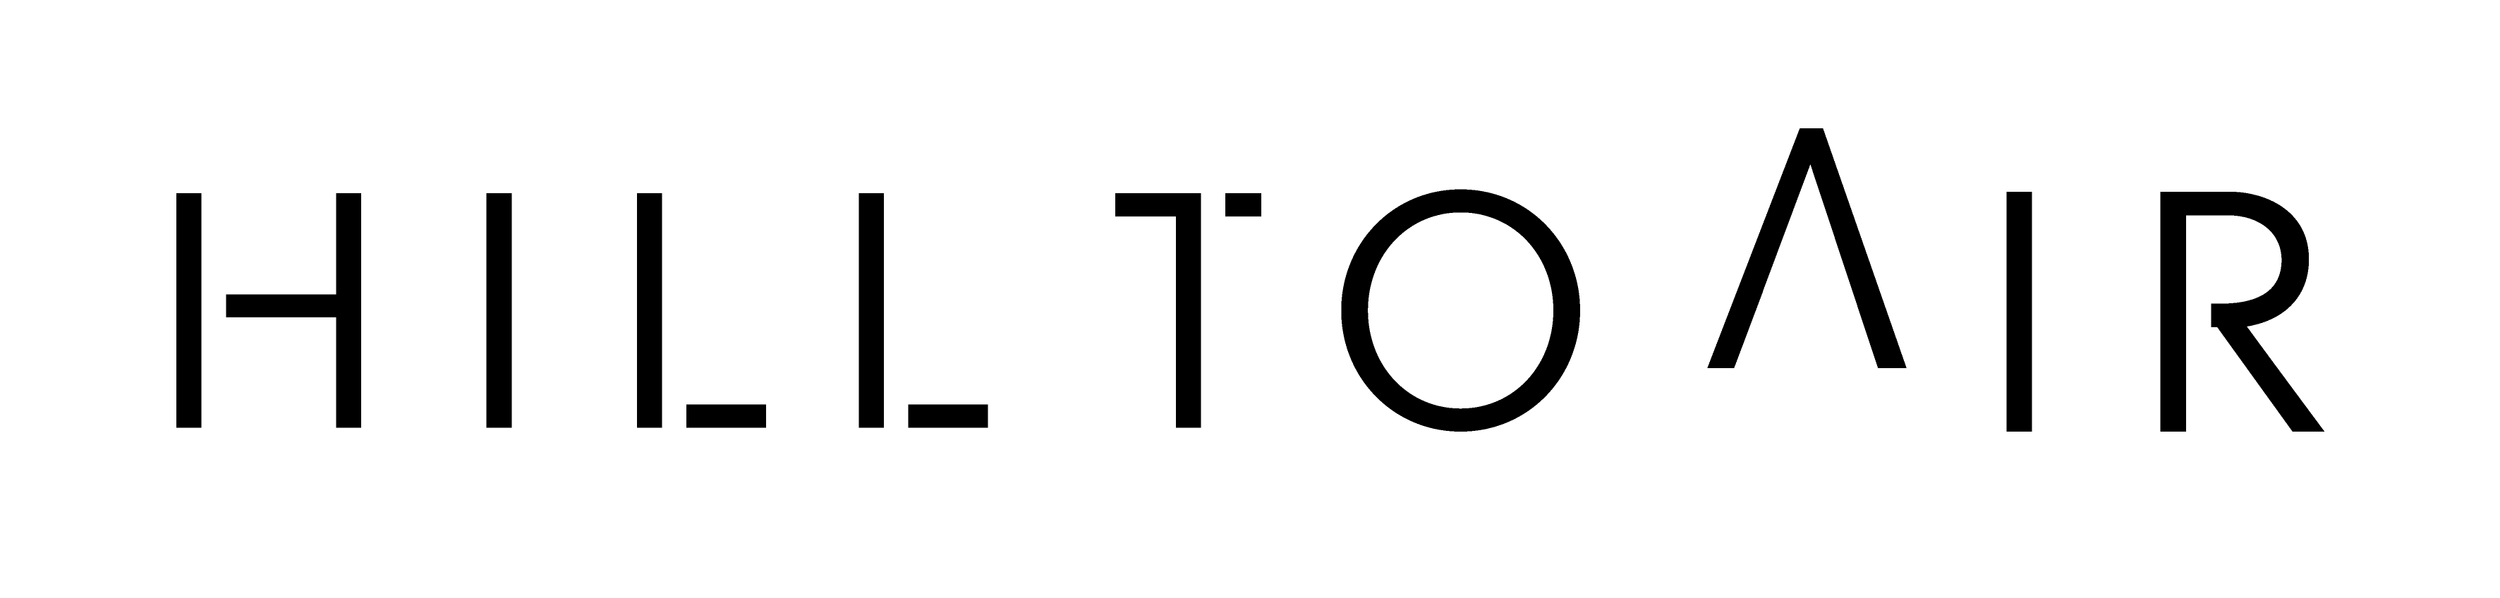 HillToAir_Logo_FA_black.png